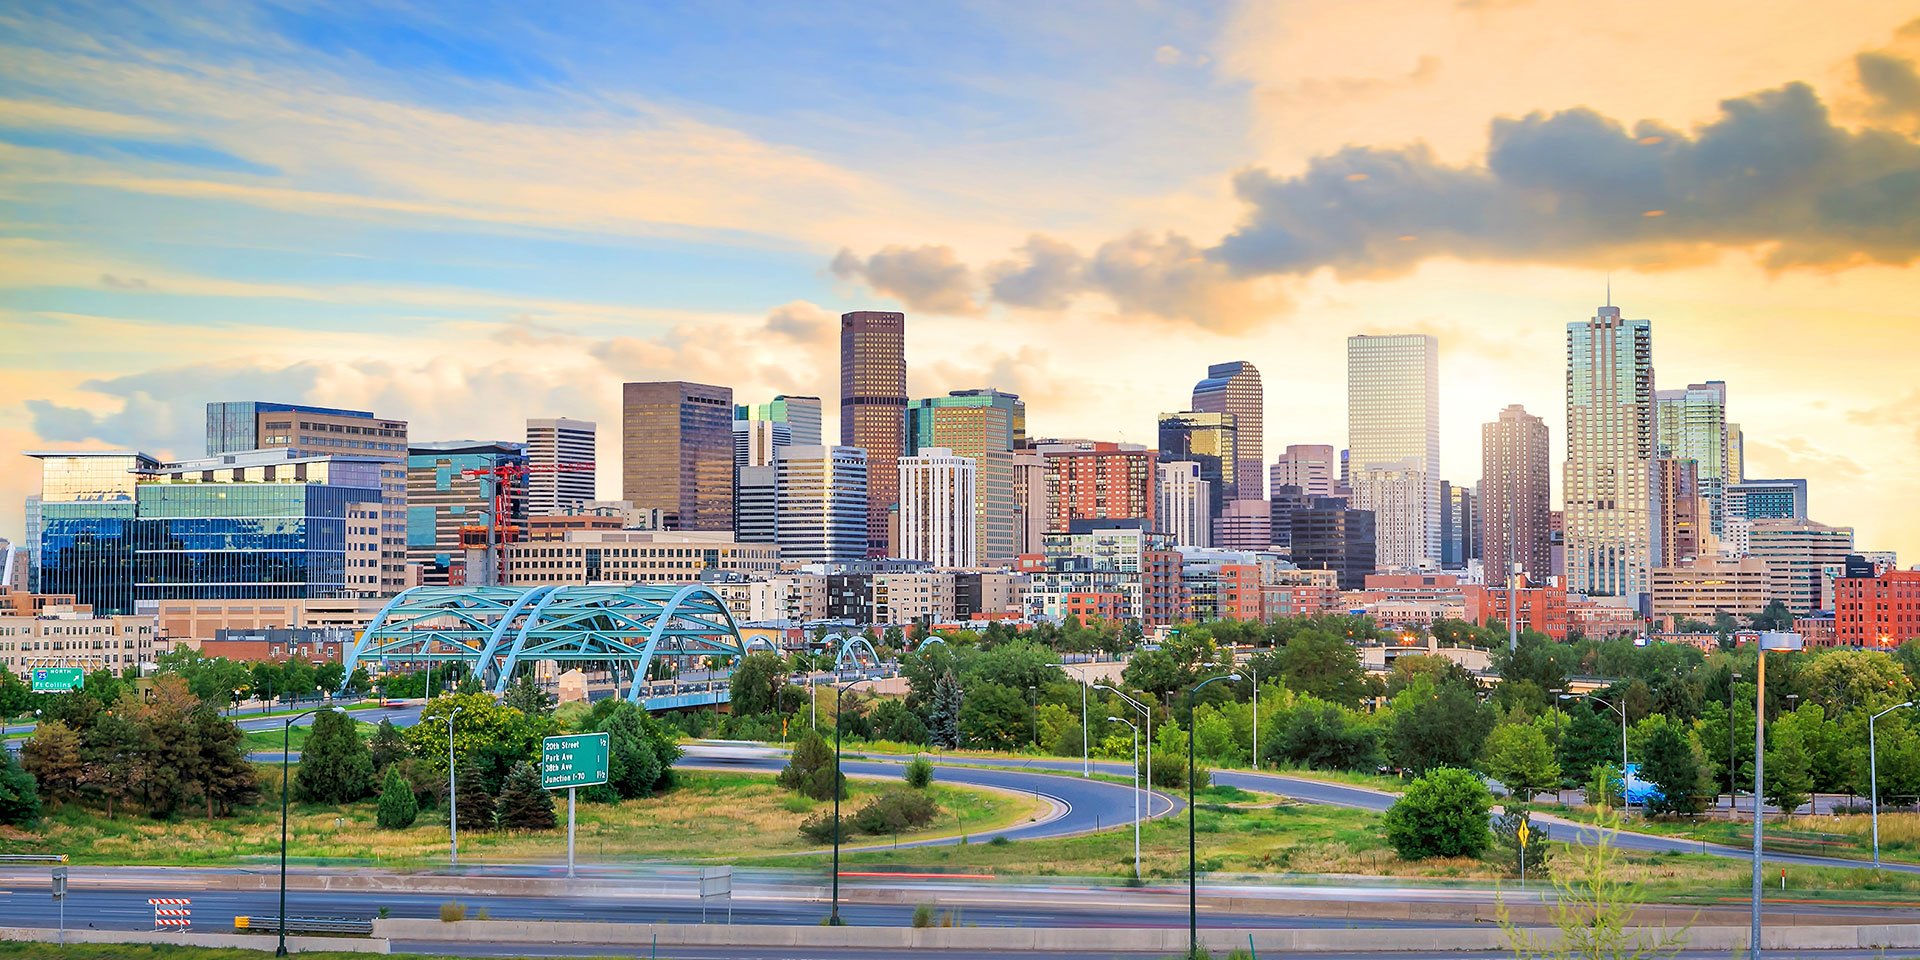 Photograph of Denver, Colorado skyline